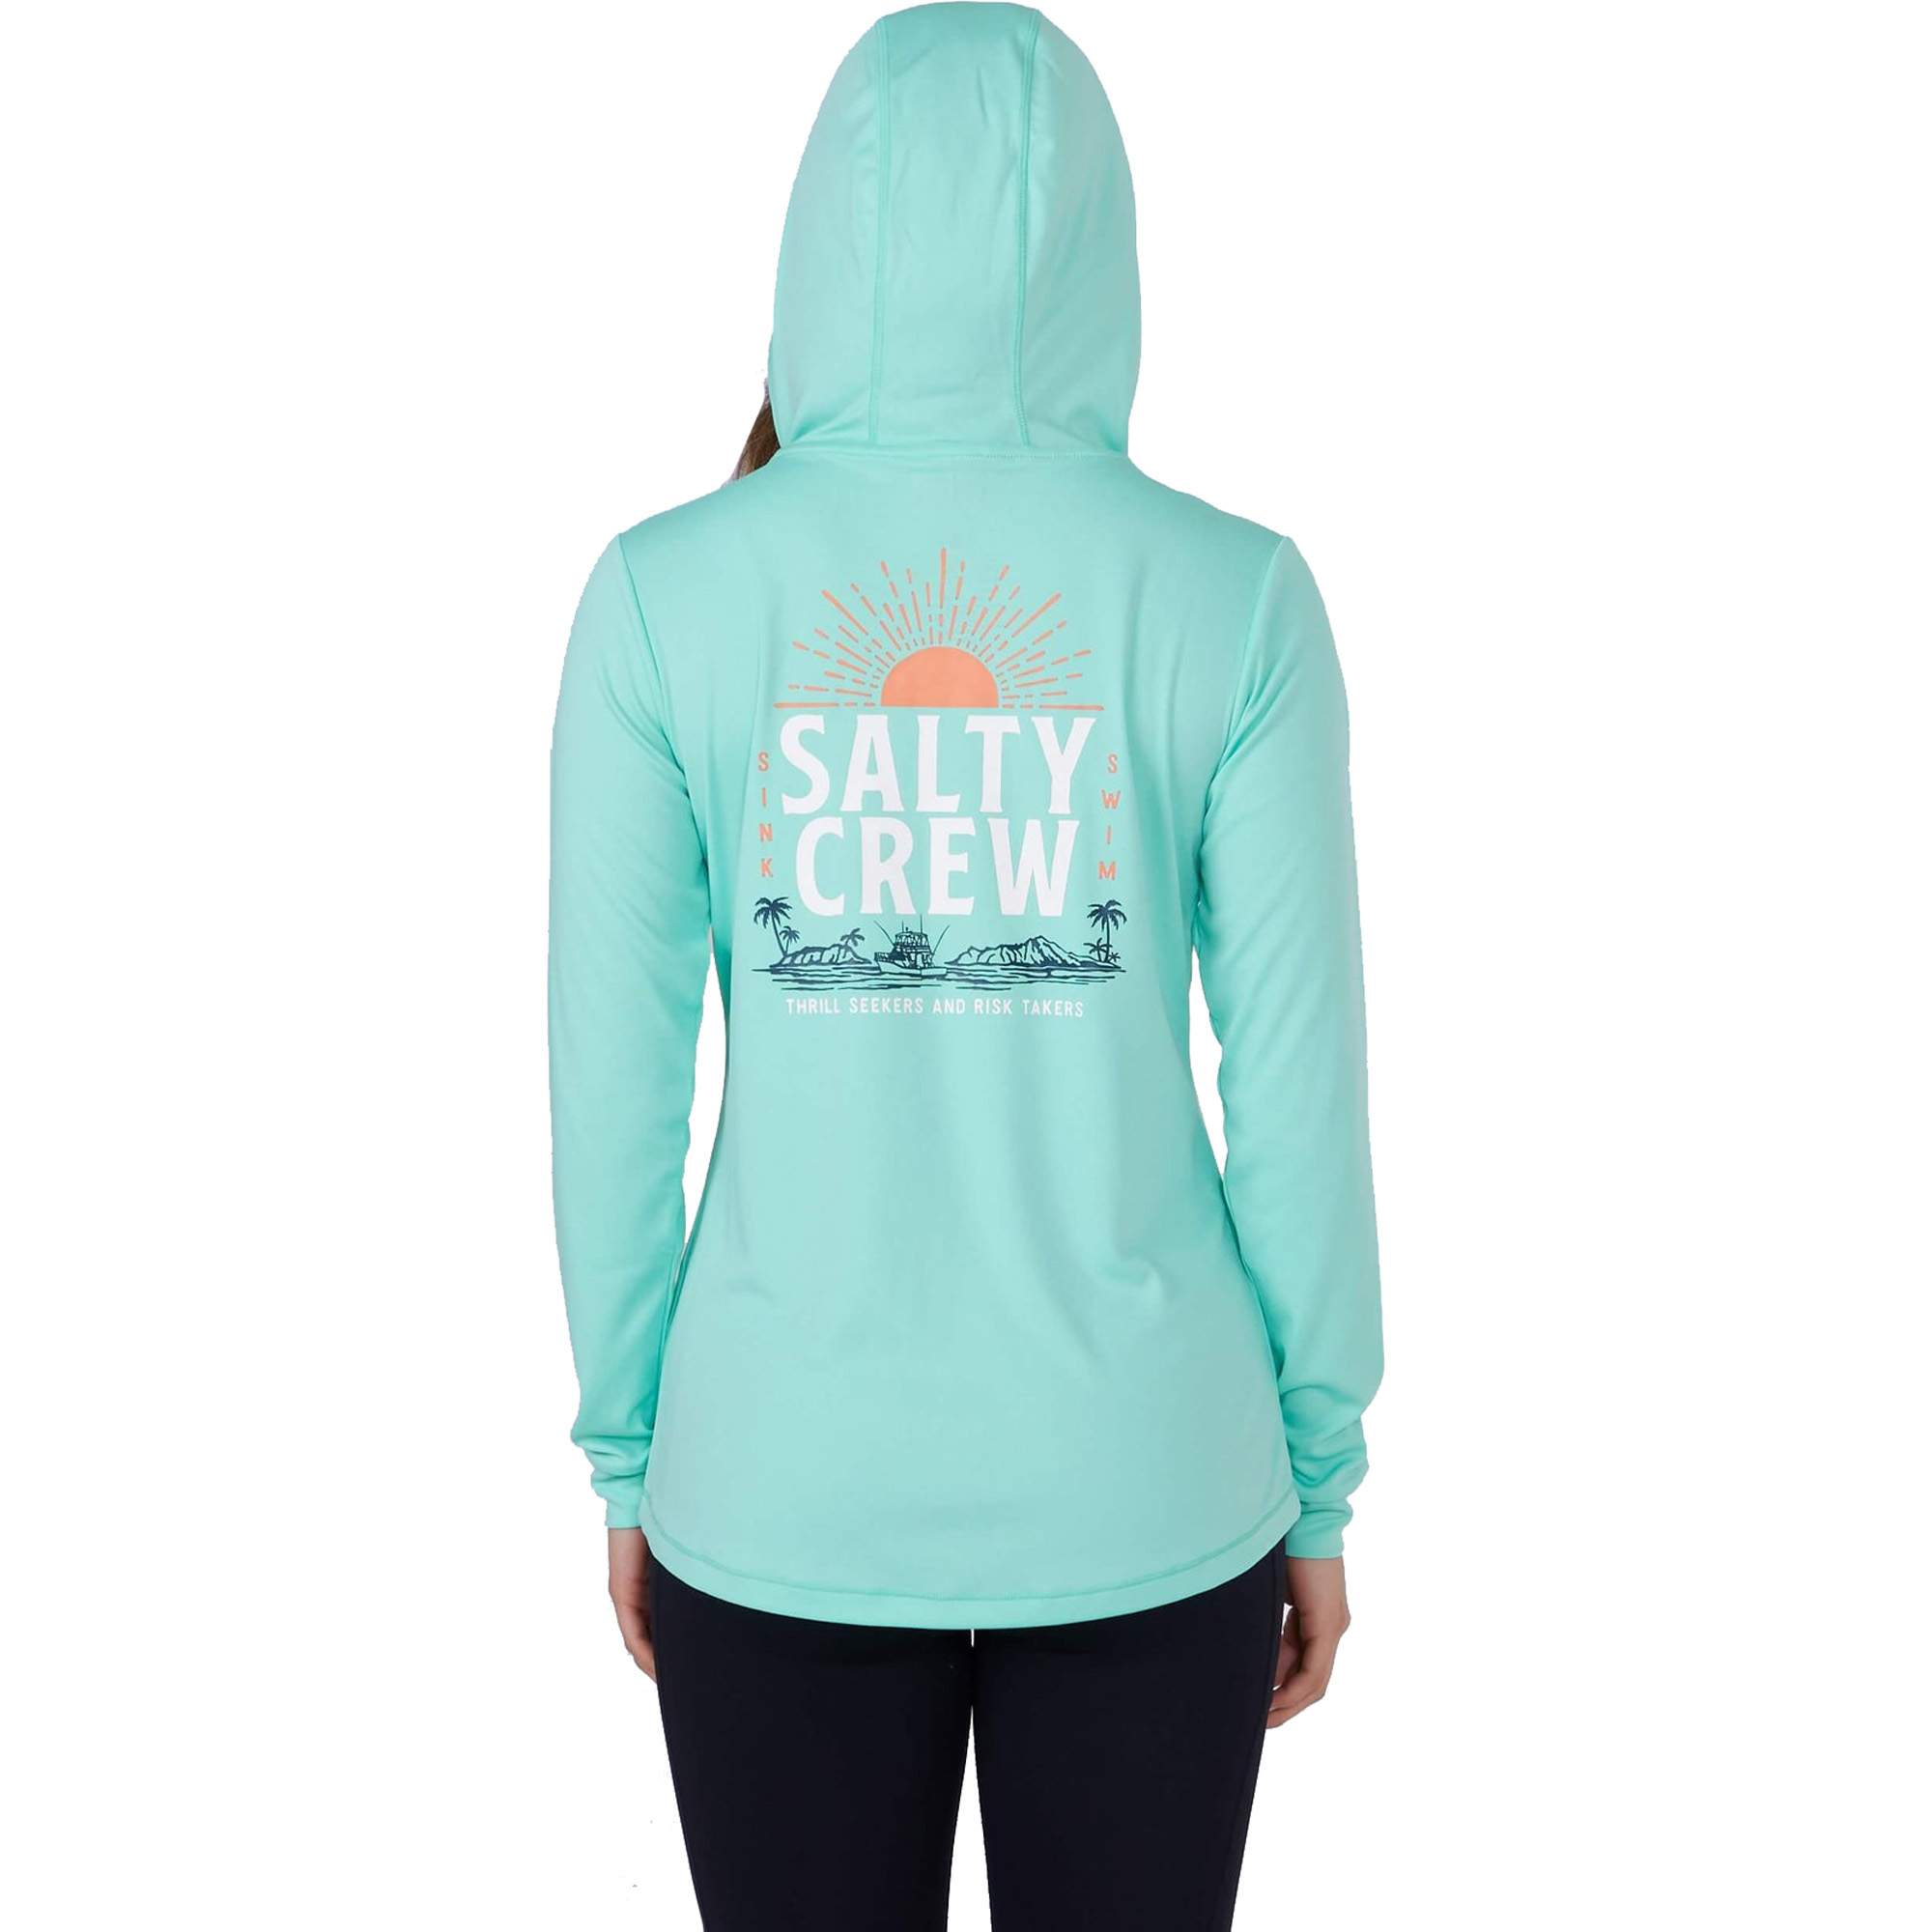 Salty Crew Cruisin Women's Hoodie Sunshirt